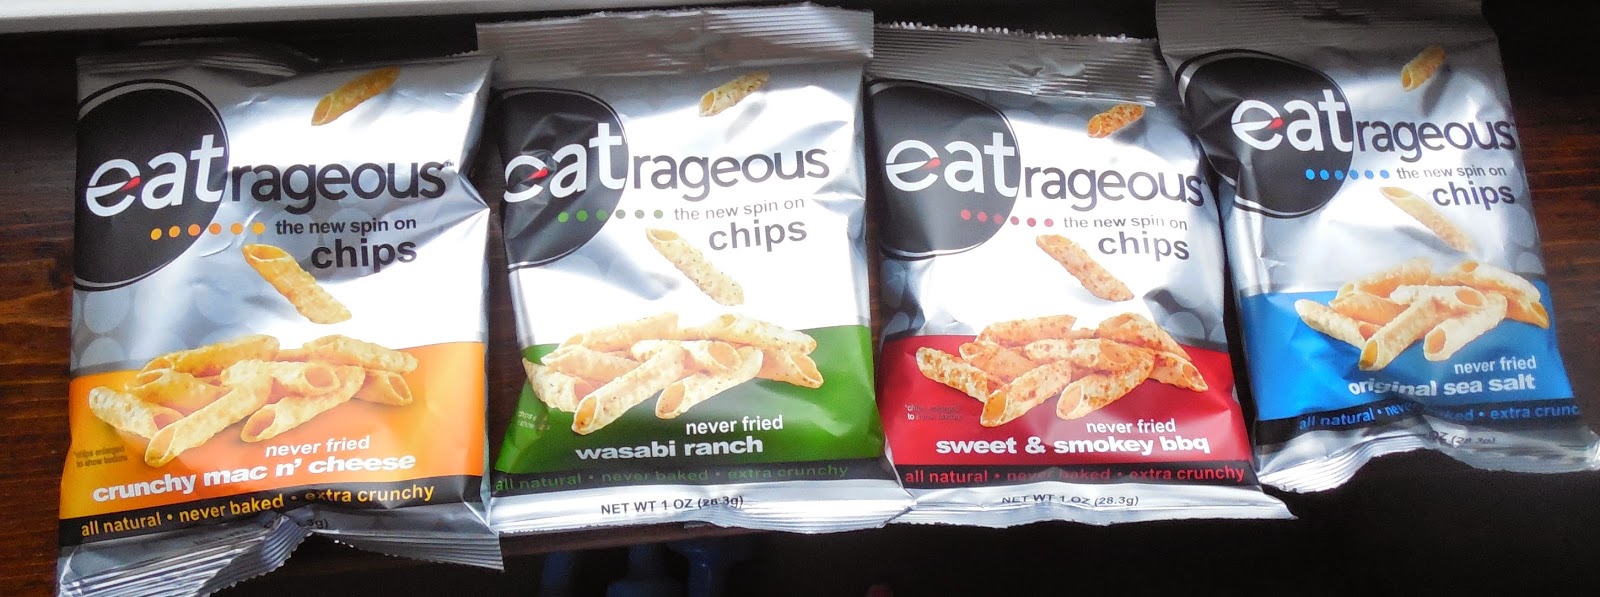 Eatrageous Chips